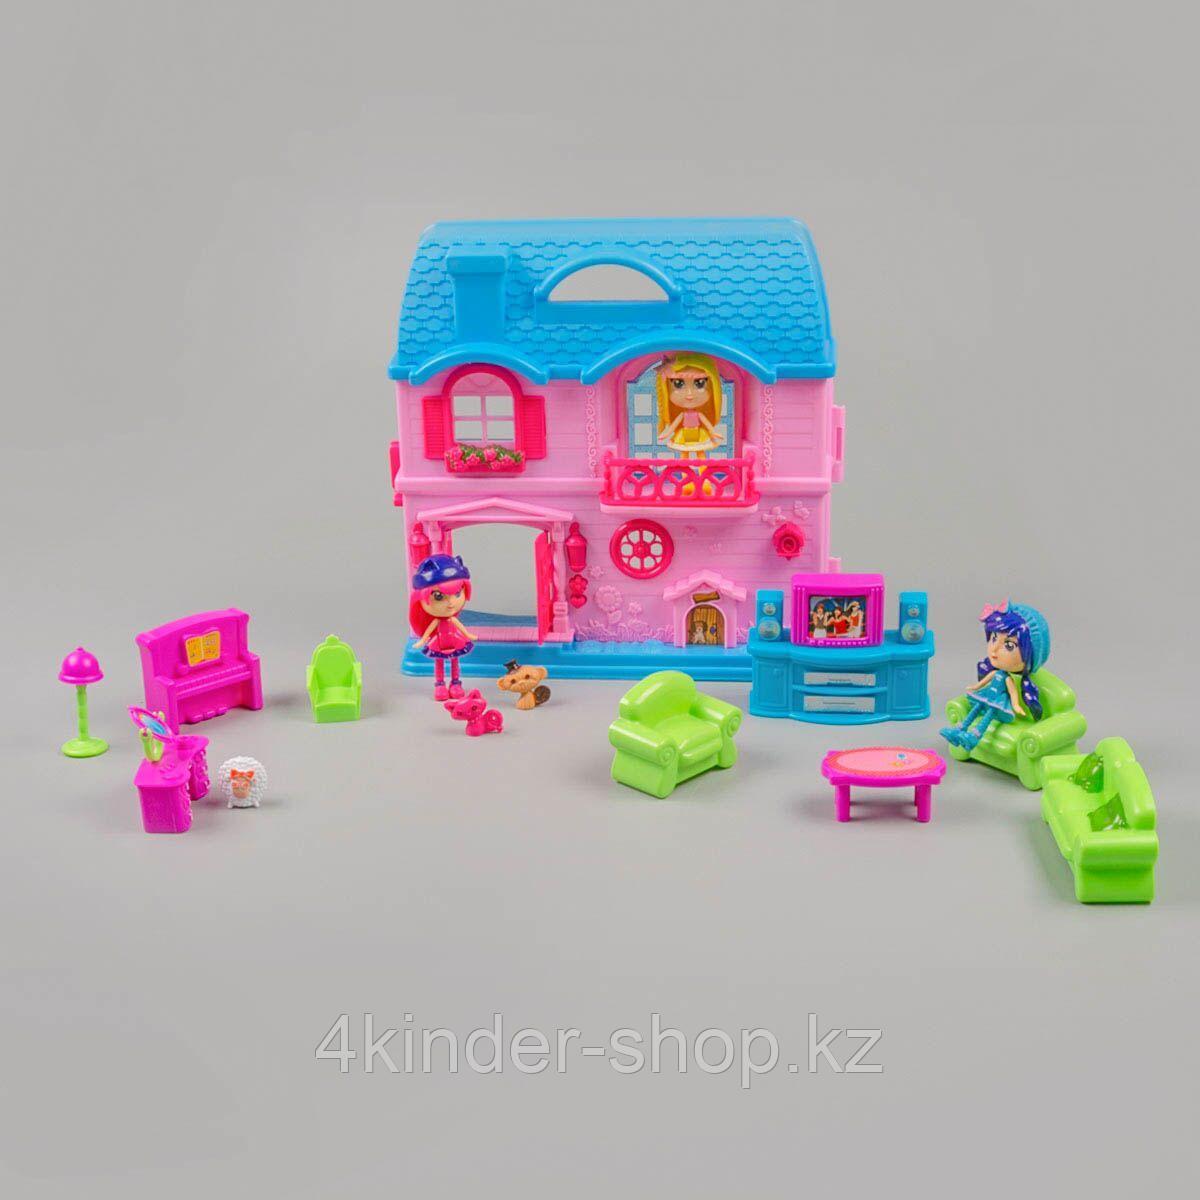 Игровой набор  "Домик для мини-куклы" с 3 куклами, розовый